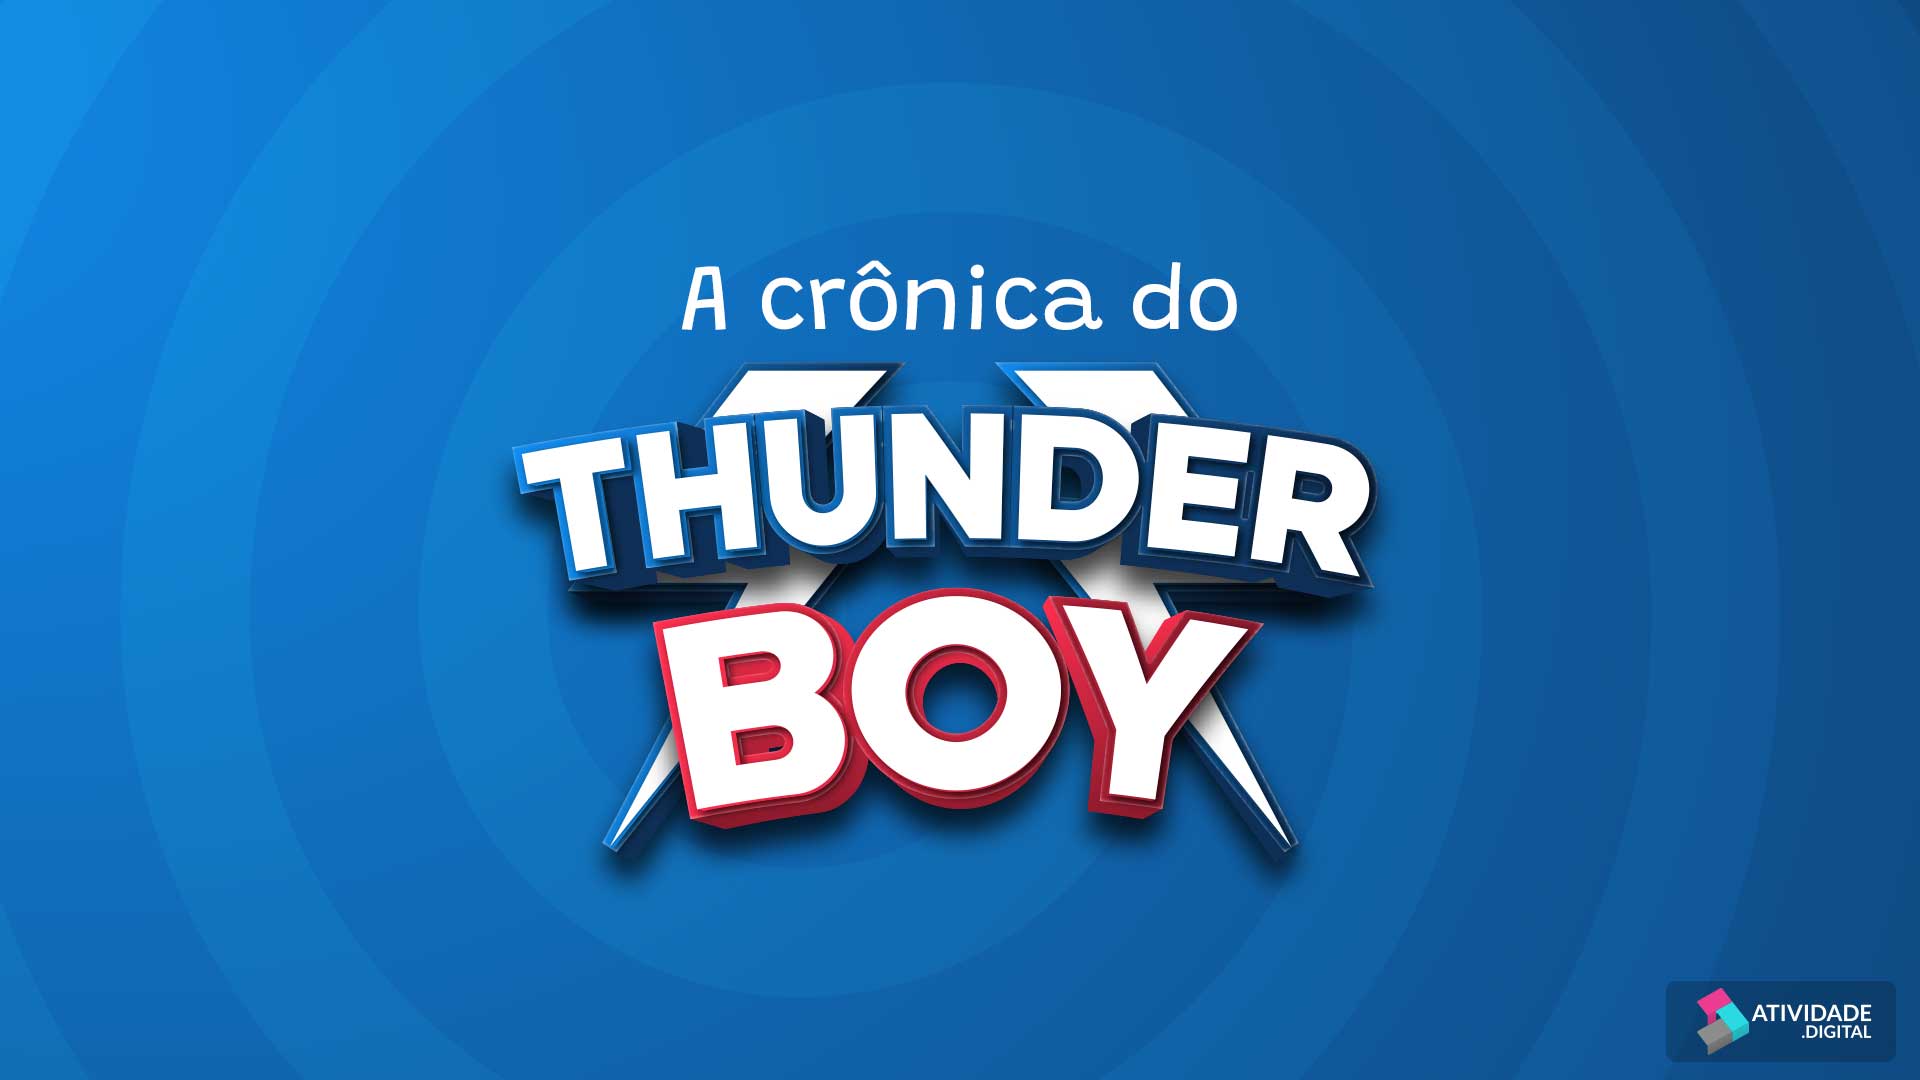 A crônica do Thunder Boy